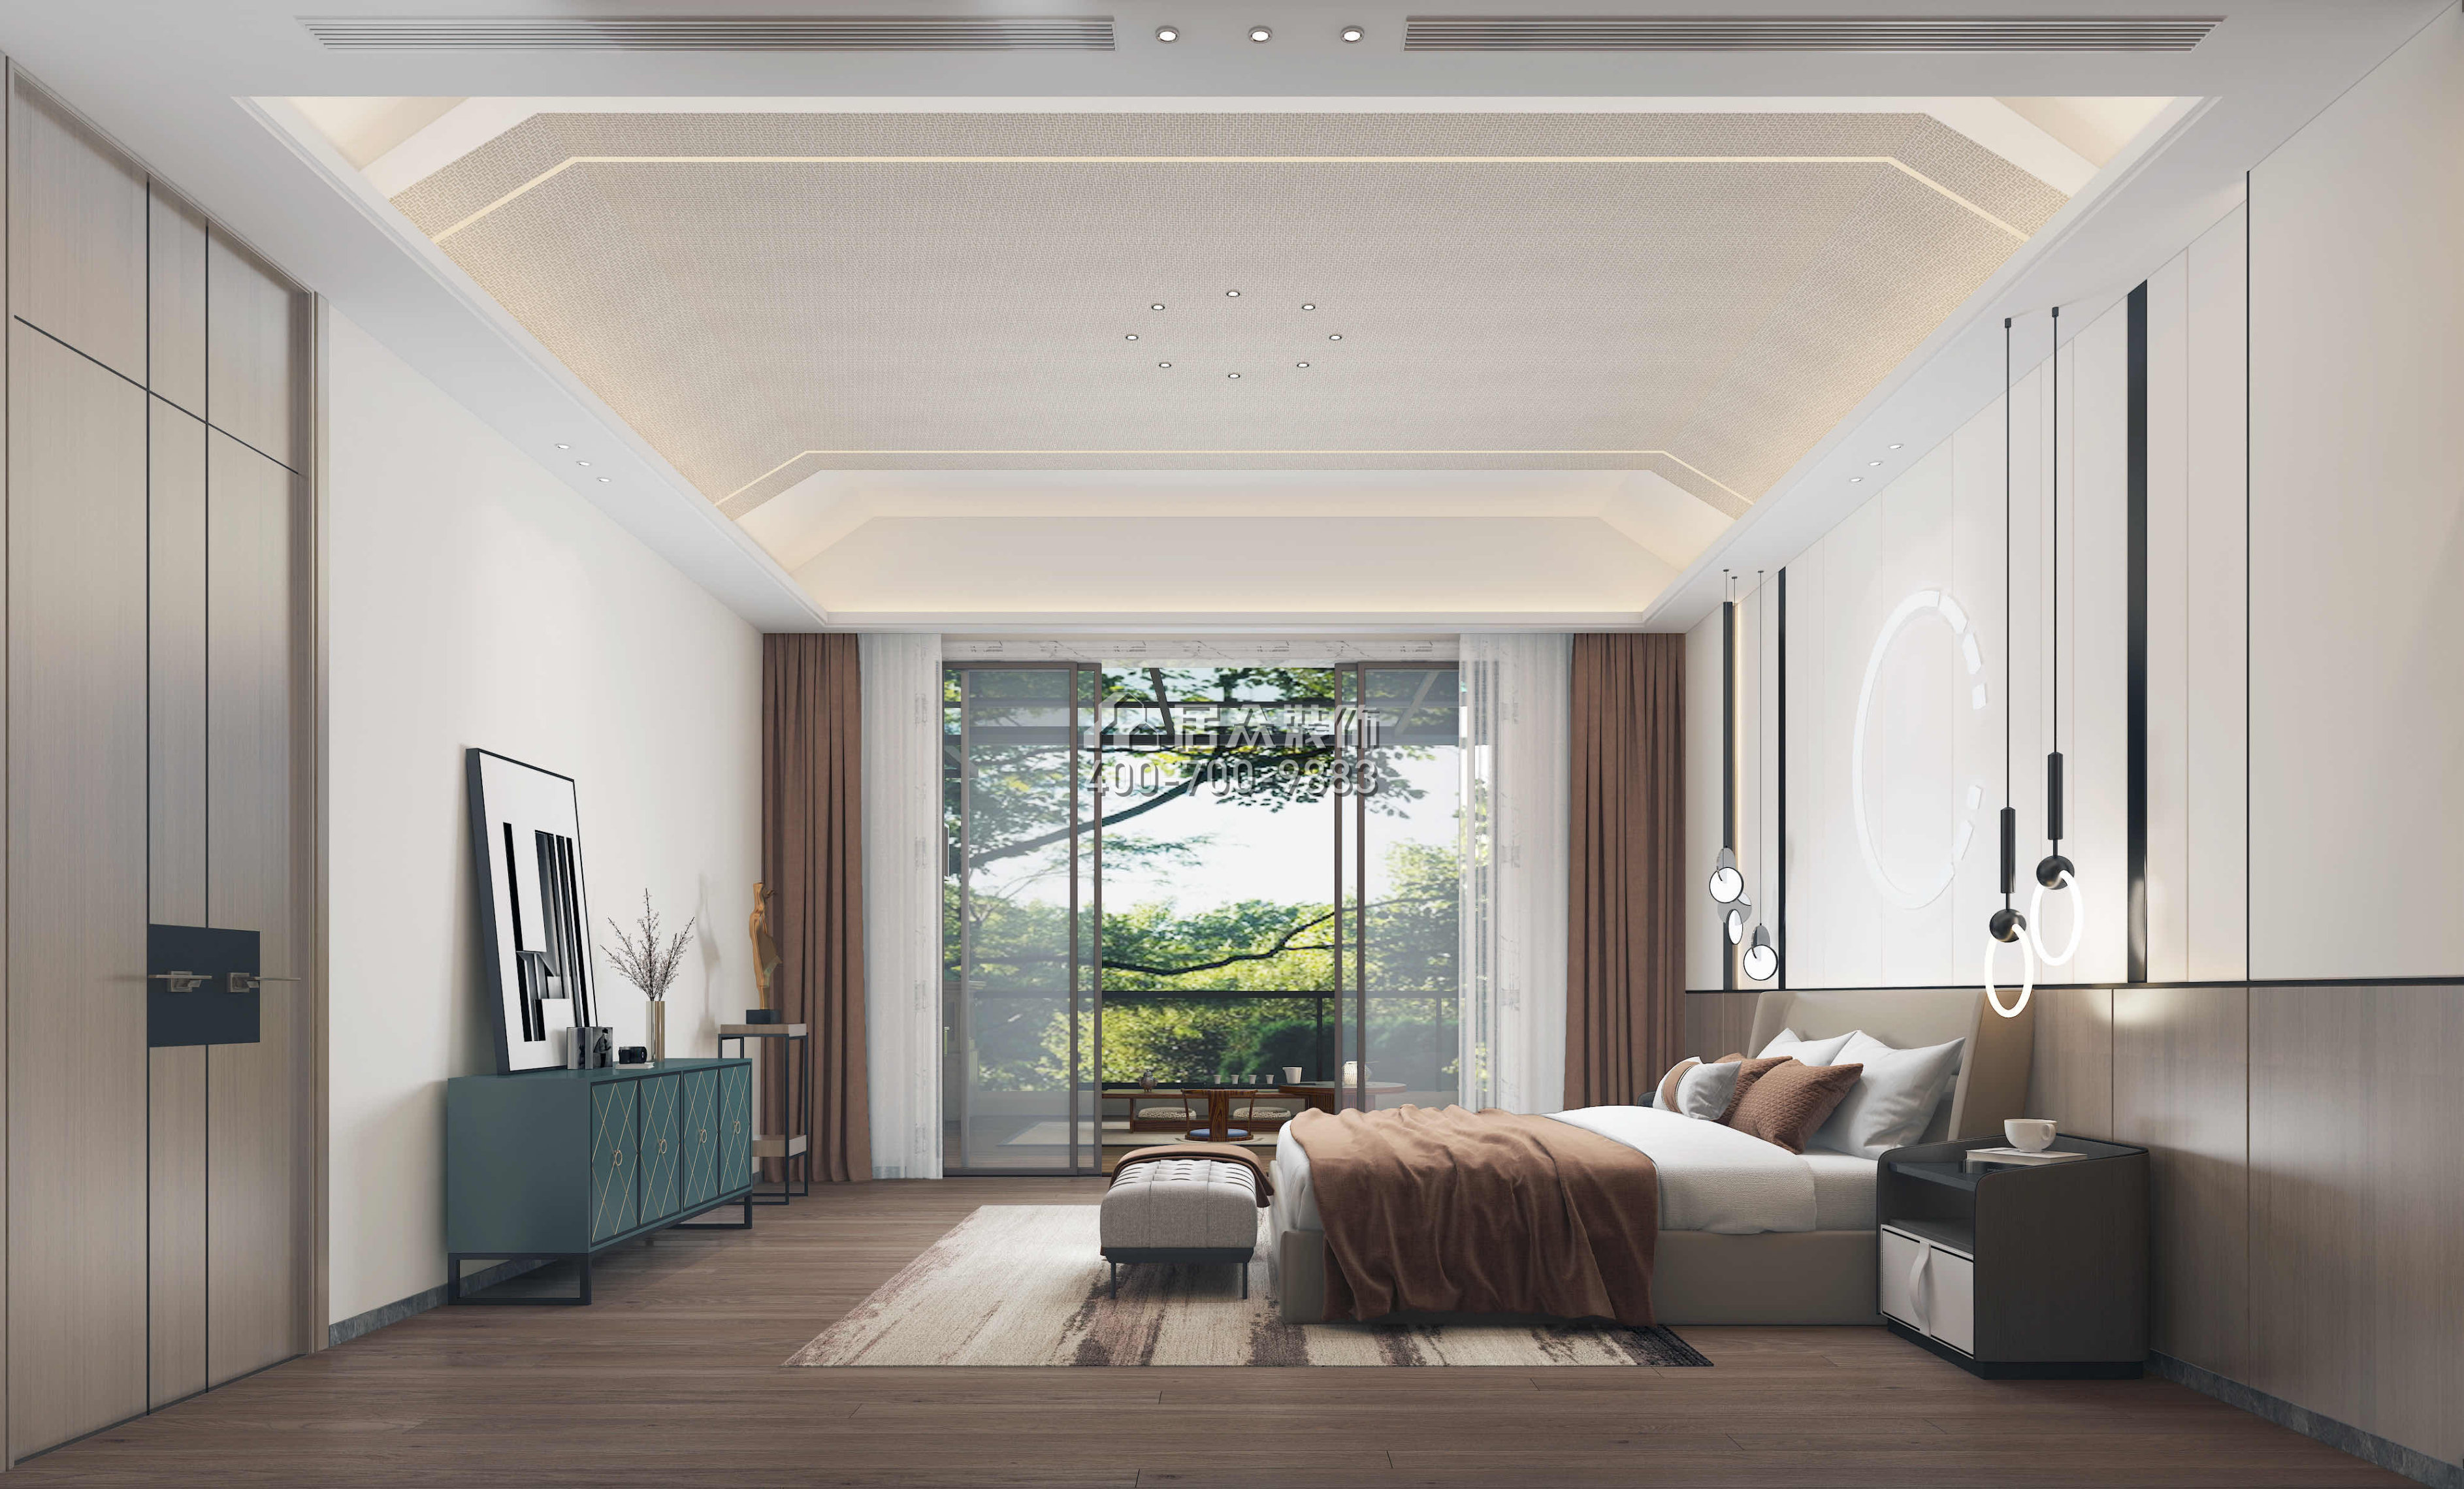 觀園800平方米現代簡約風格別墅戶型臥室裝修效果圖